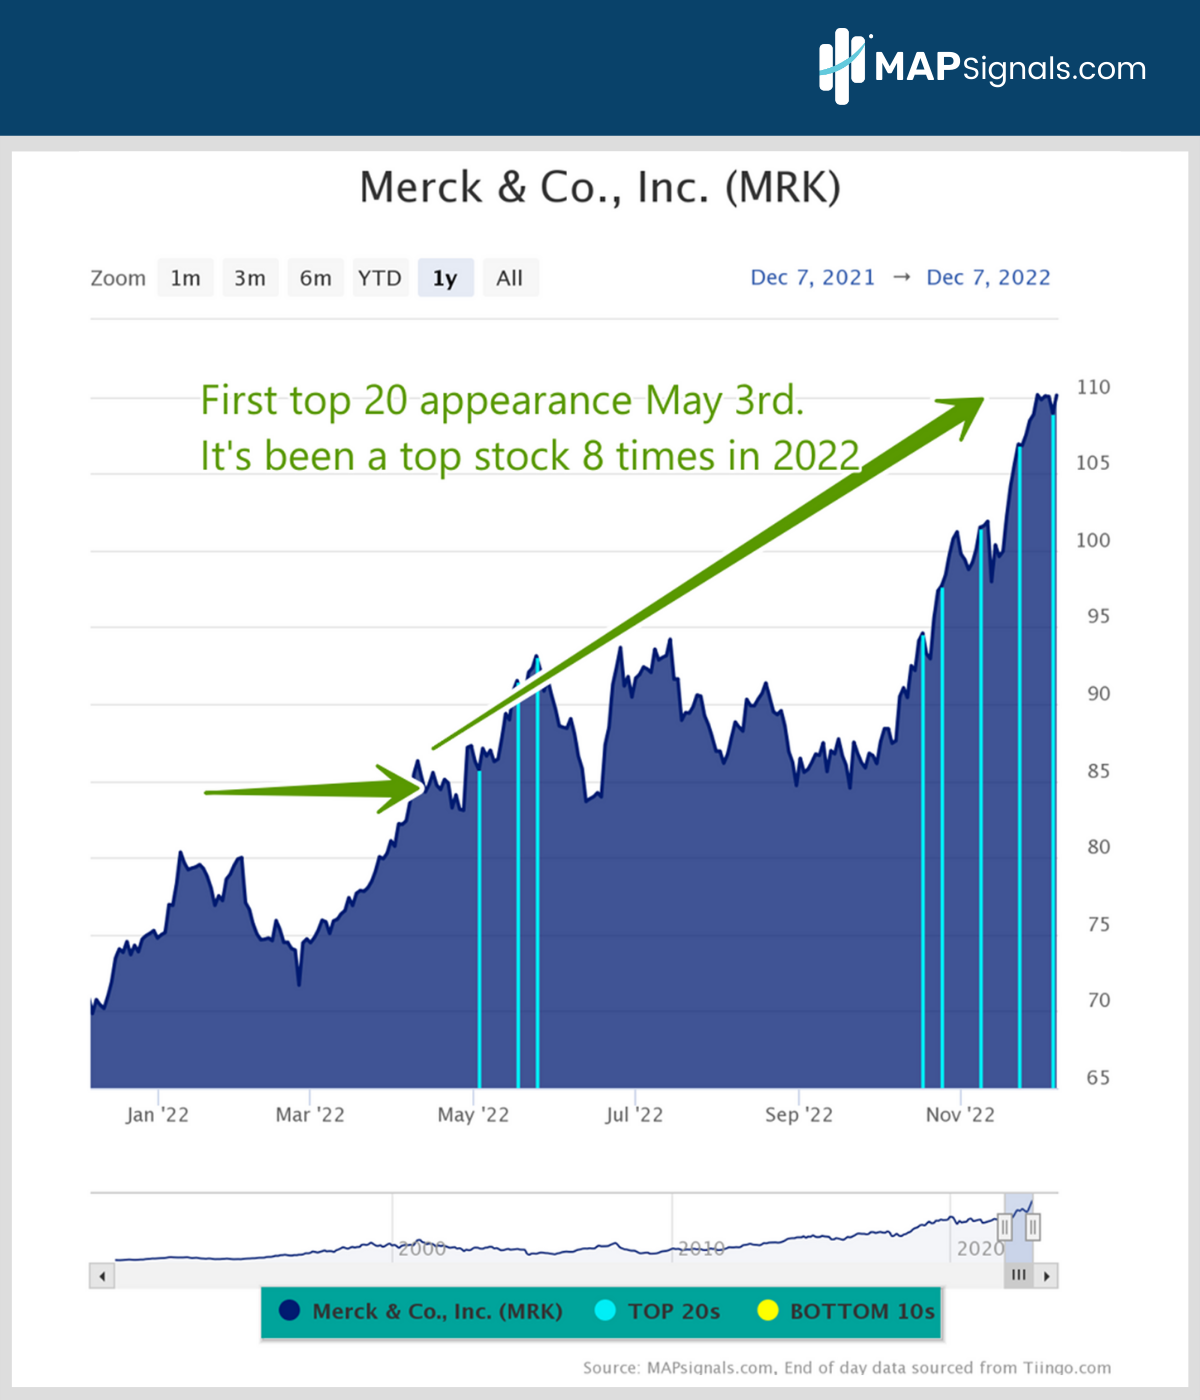 Merck & Co., Inc. (MRK) | MAPsignals